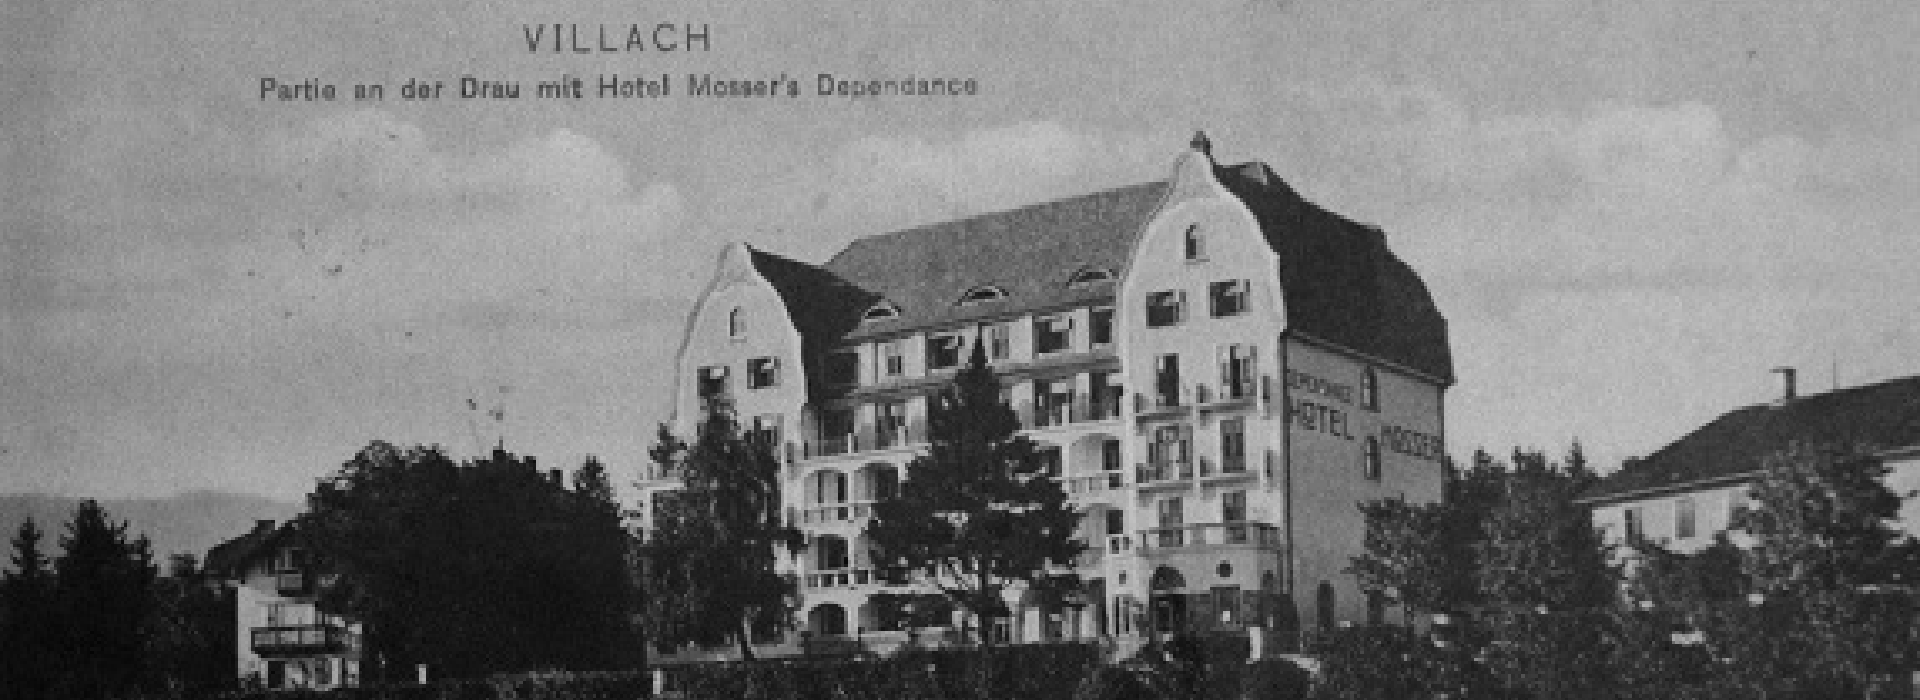 Geschichte Villach